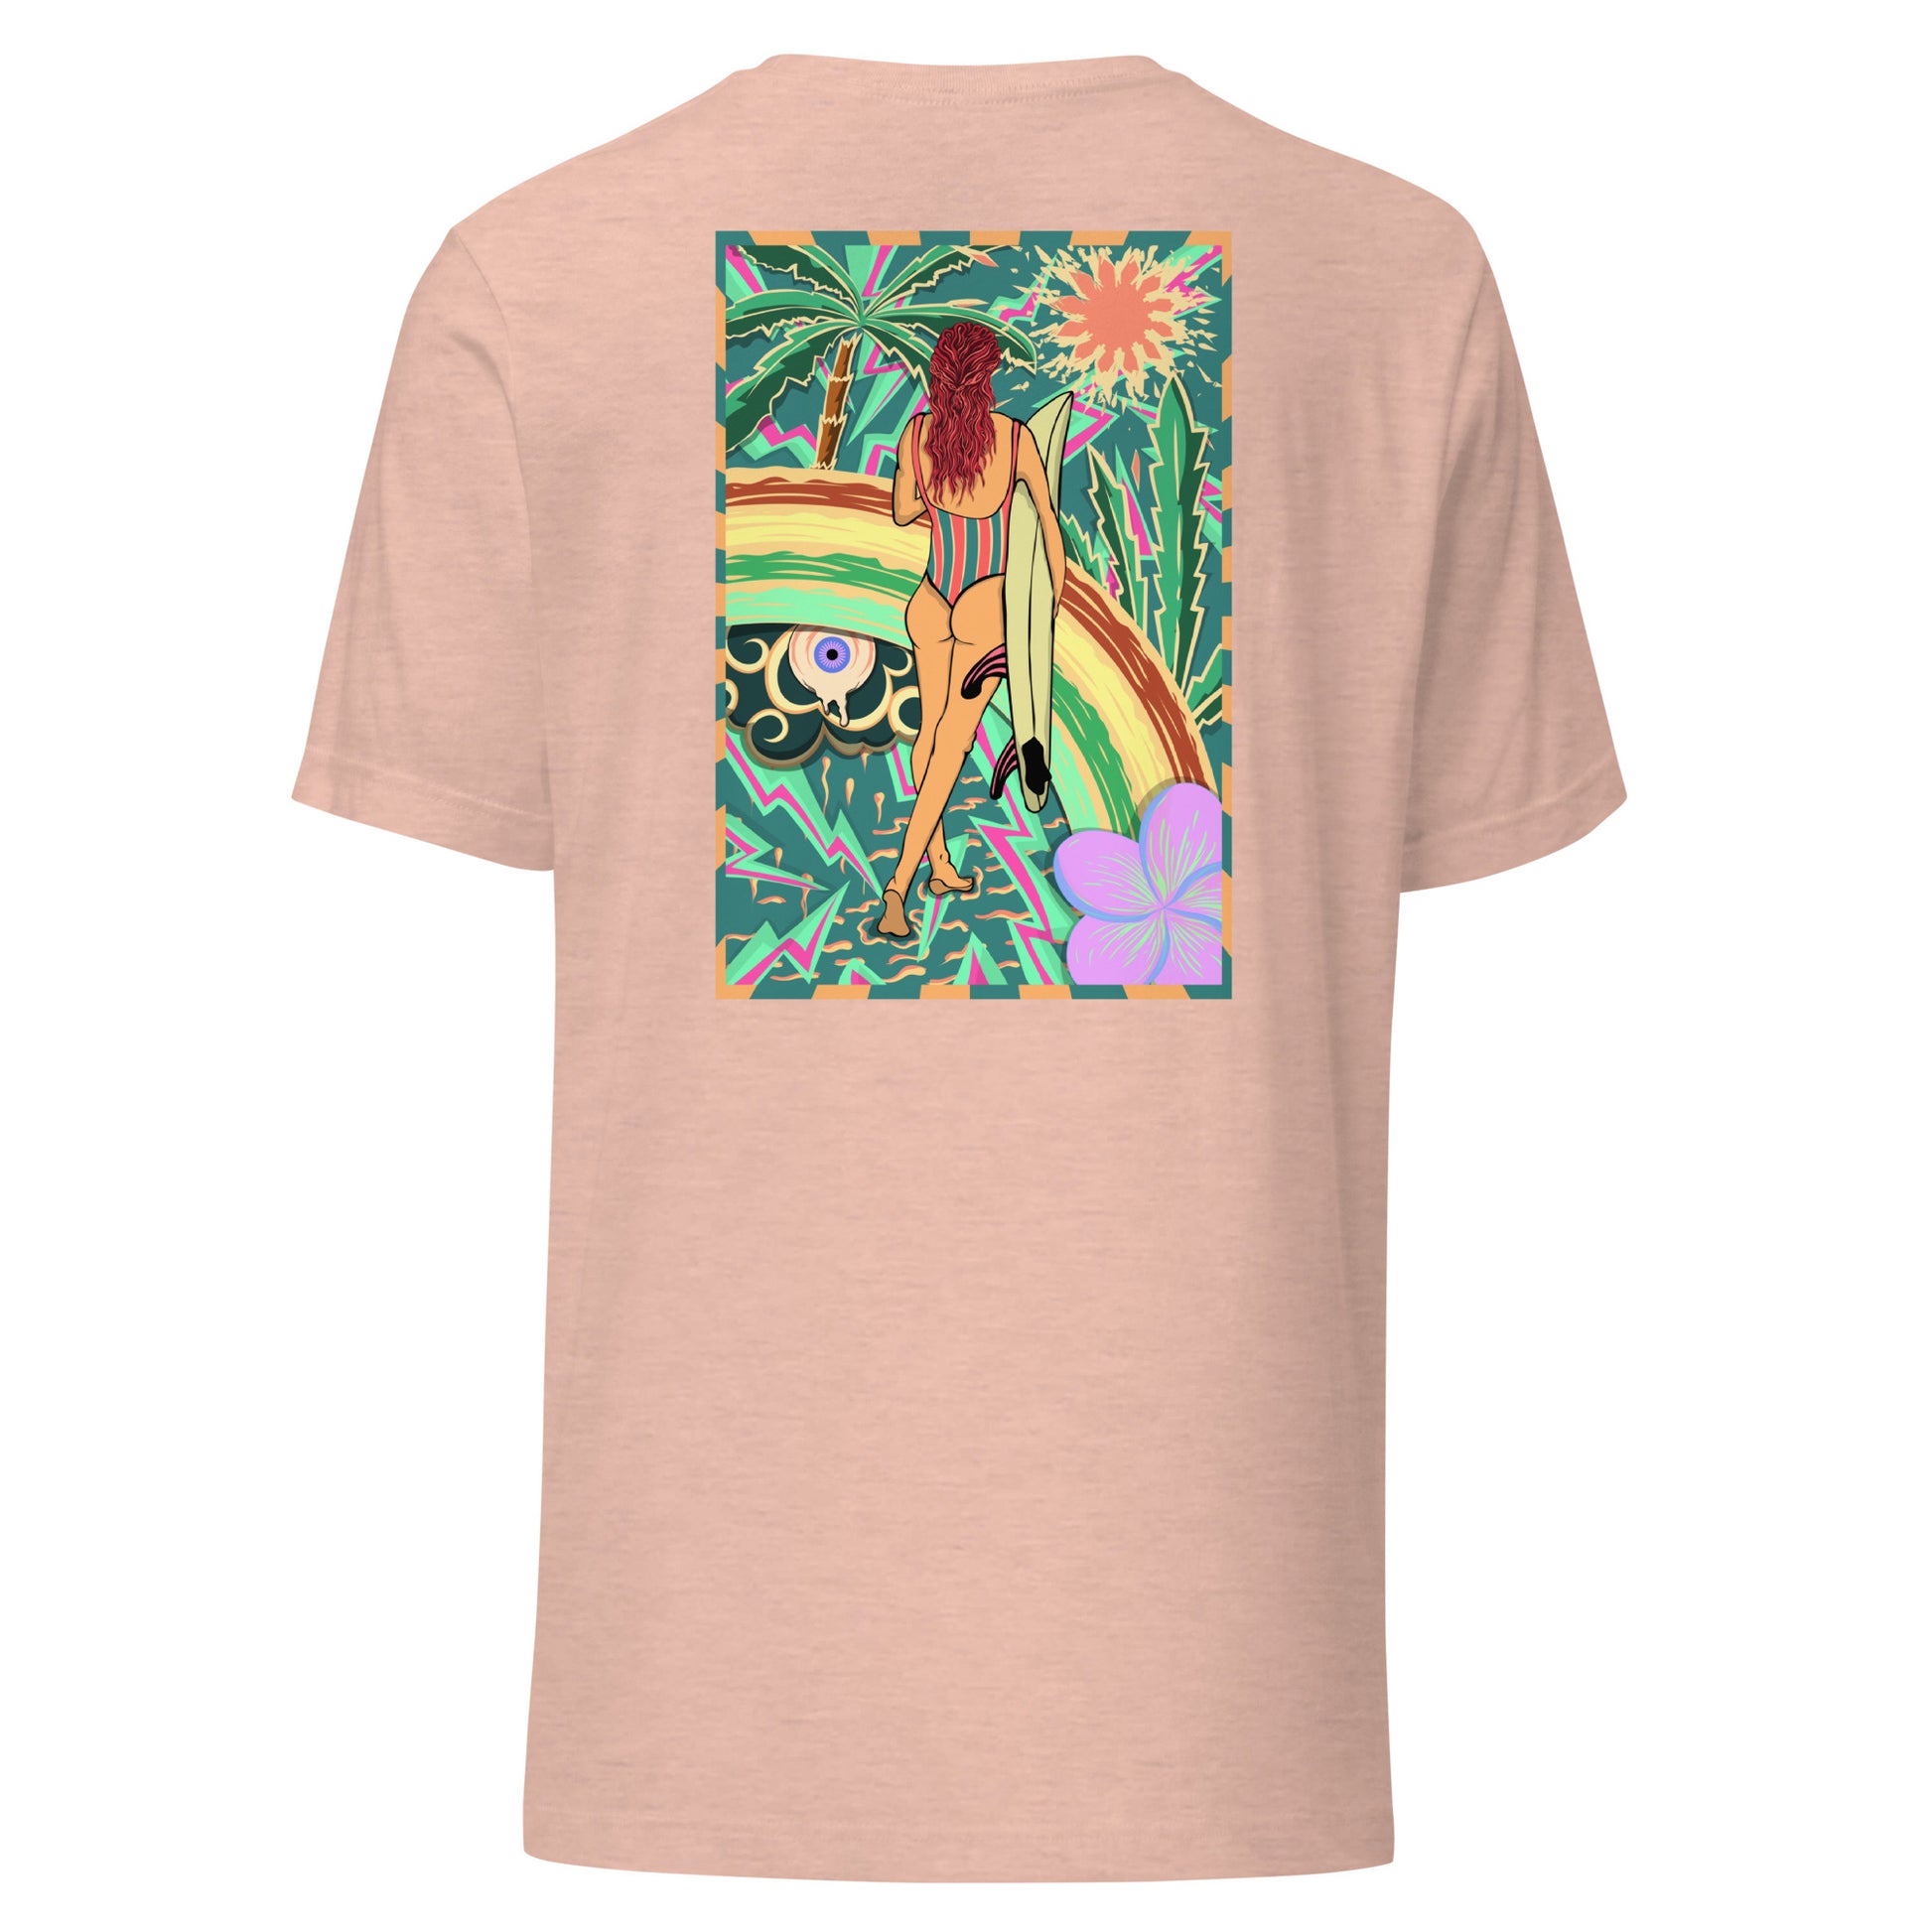 T-shirt surf vintage Walk Of Life surfeuse coloré hippie avec des palmier, fleur, arc en ciel et œil psychédélique. Tshirt dos rose